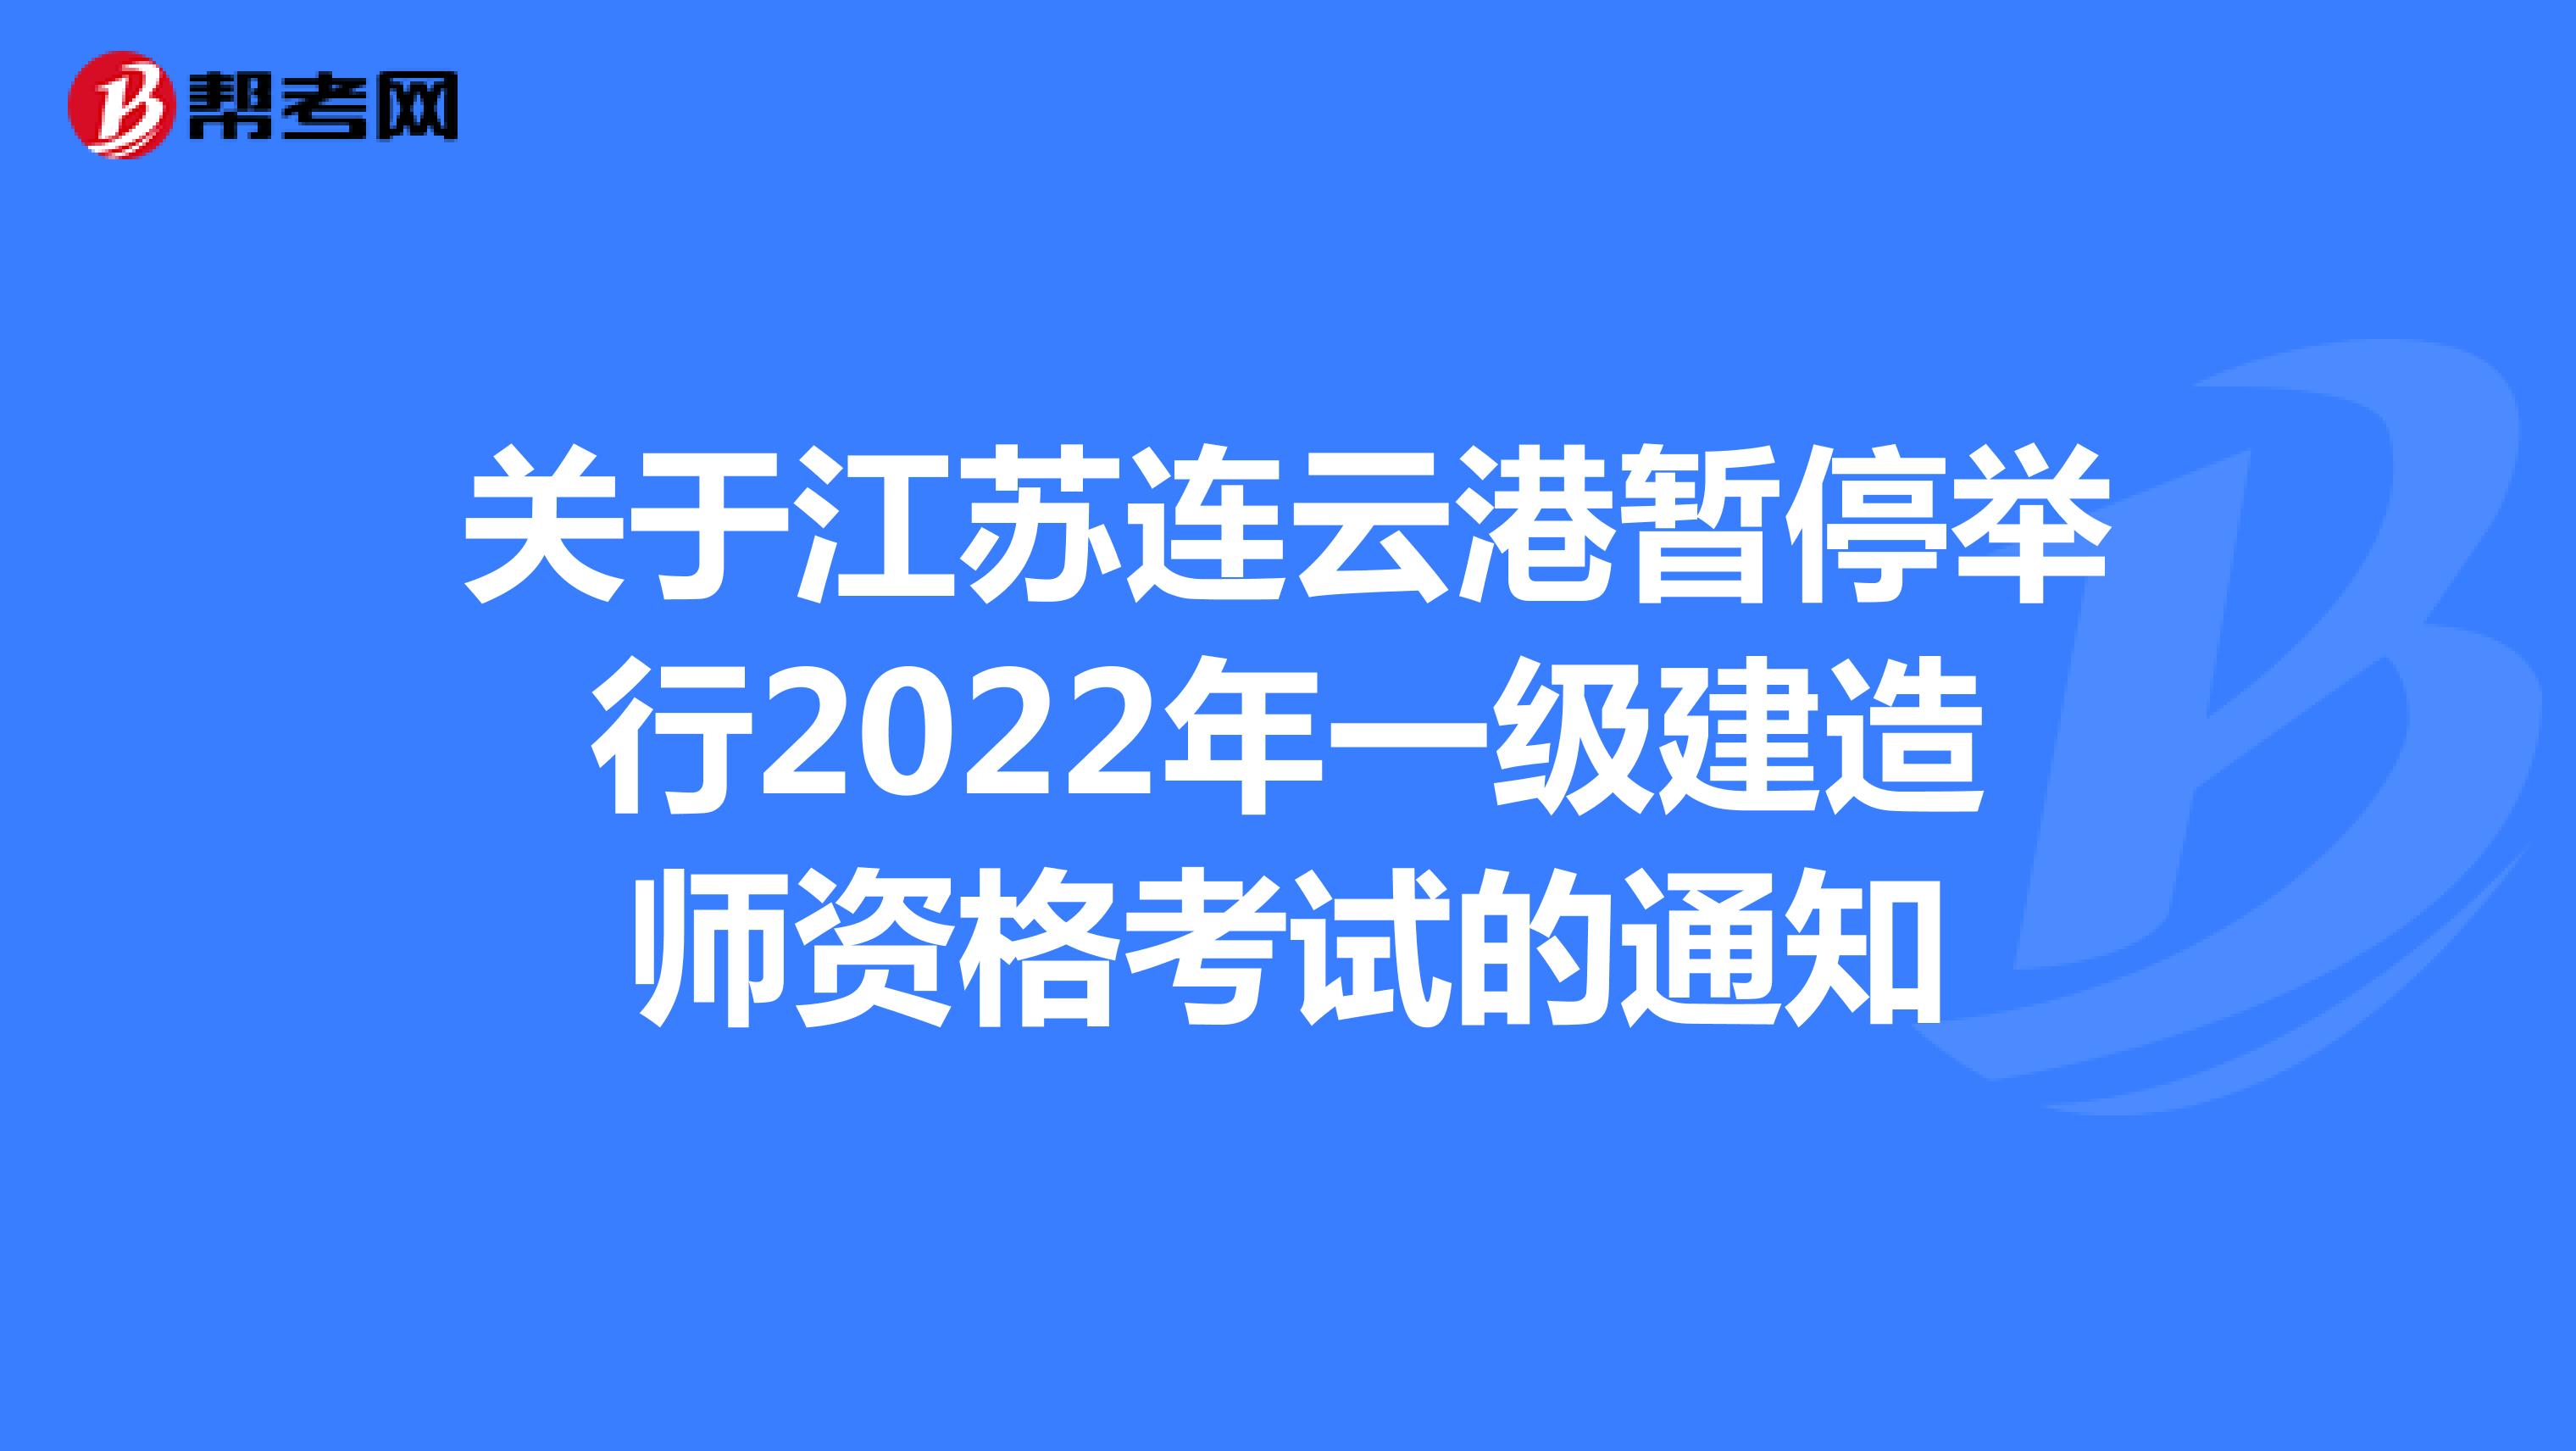 关于江苏连云港暂停举行2022年一级建造师资格考试的通知